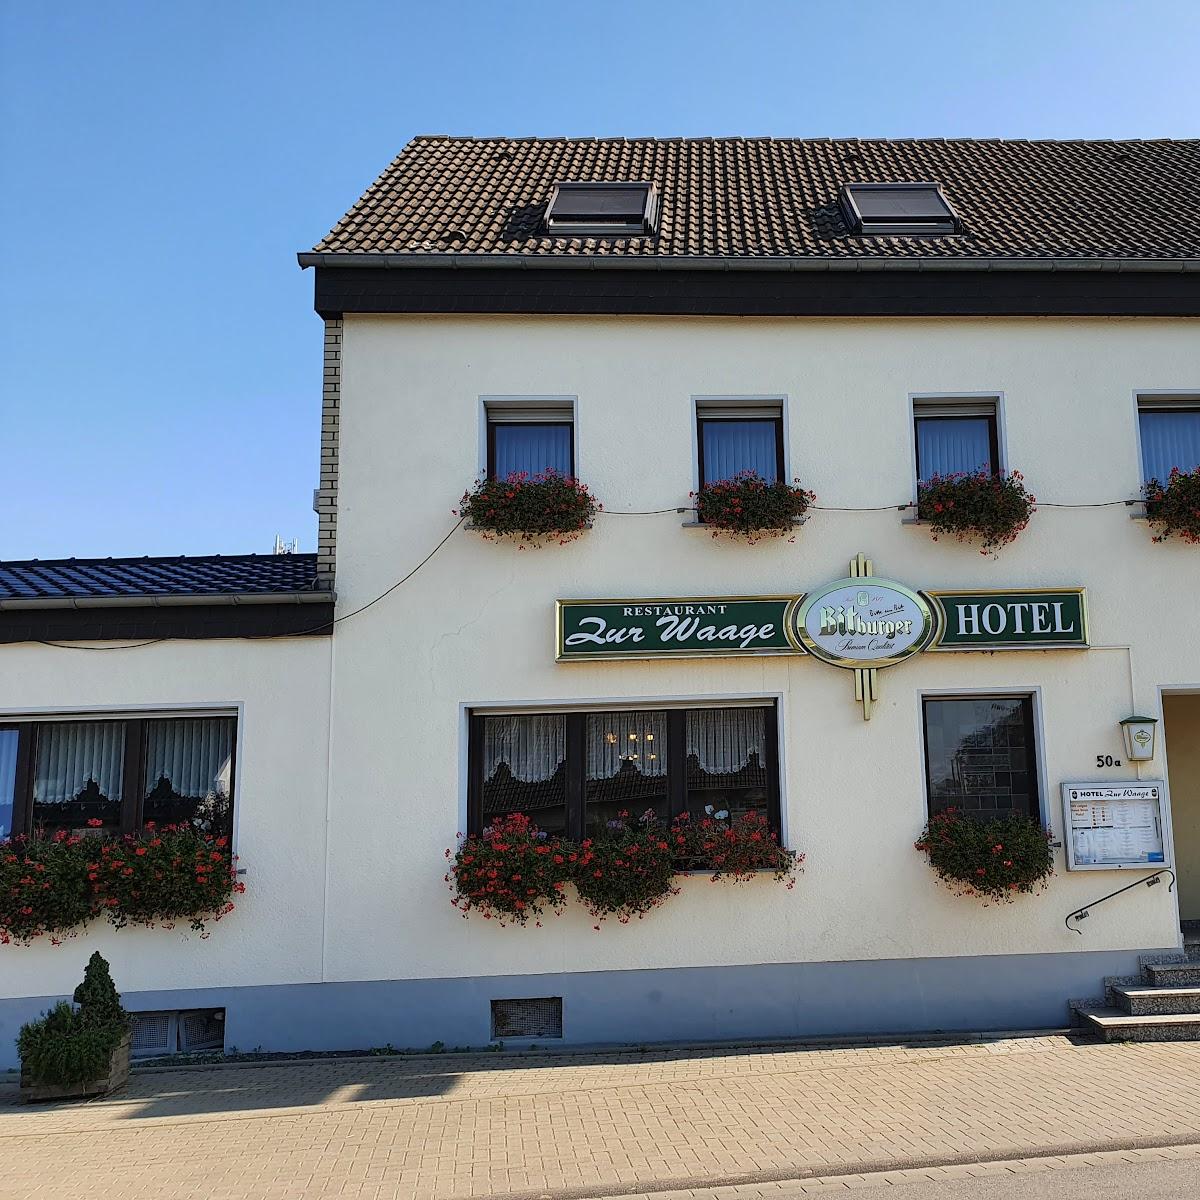 Restaurant "Hotel zur Waage" in Bad Münstereifel